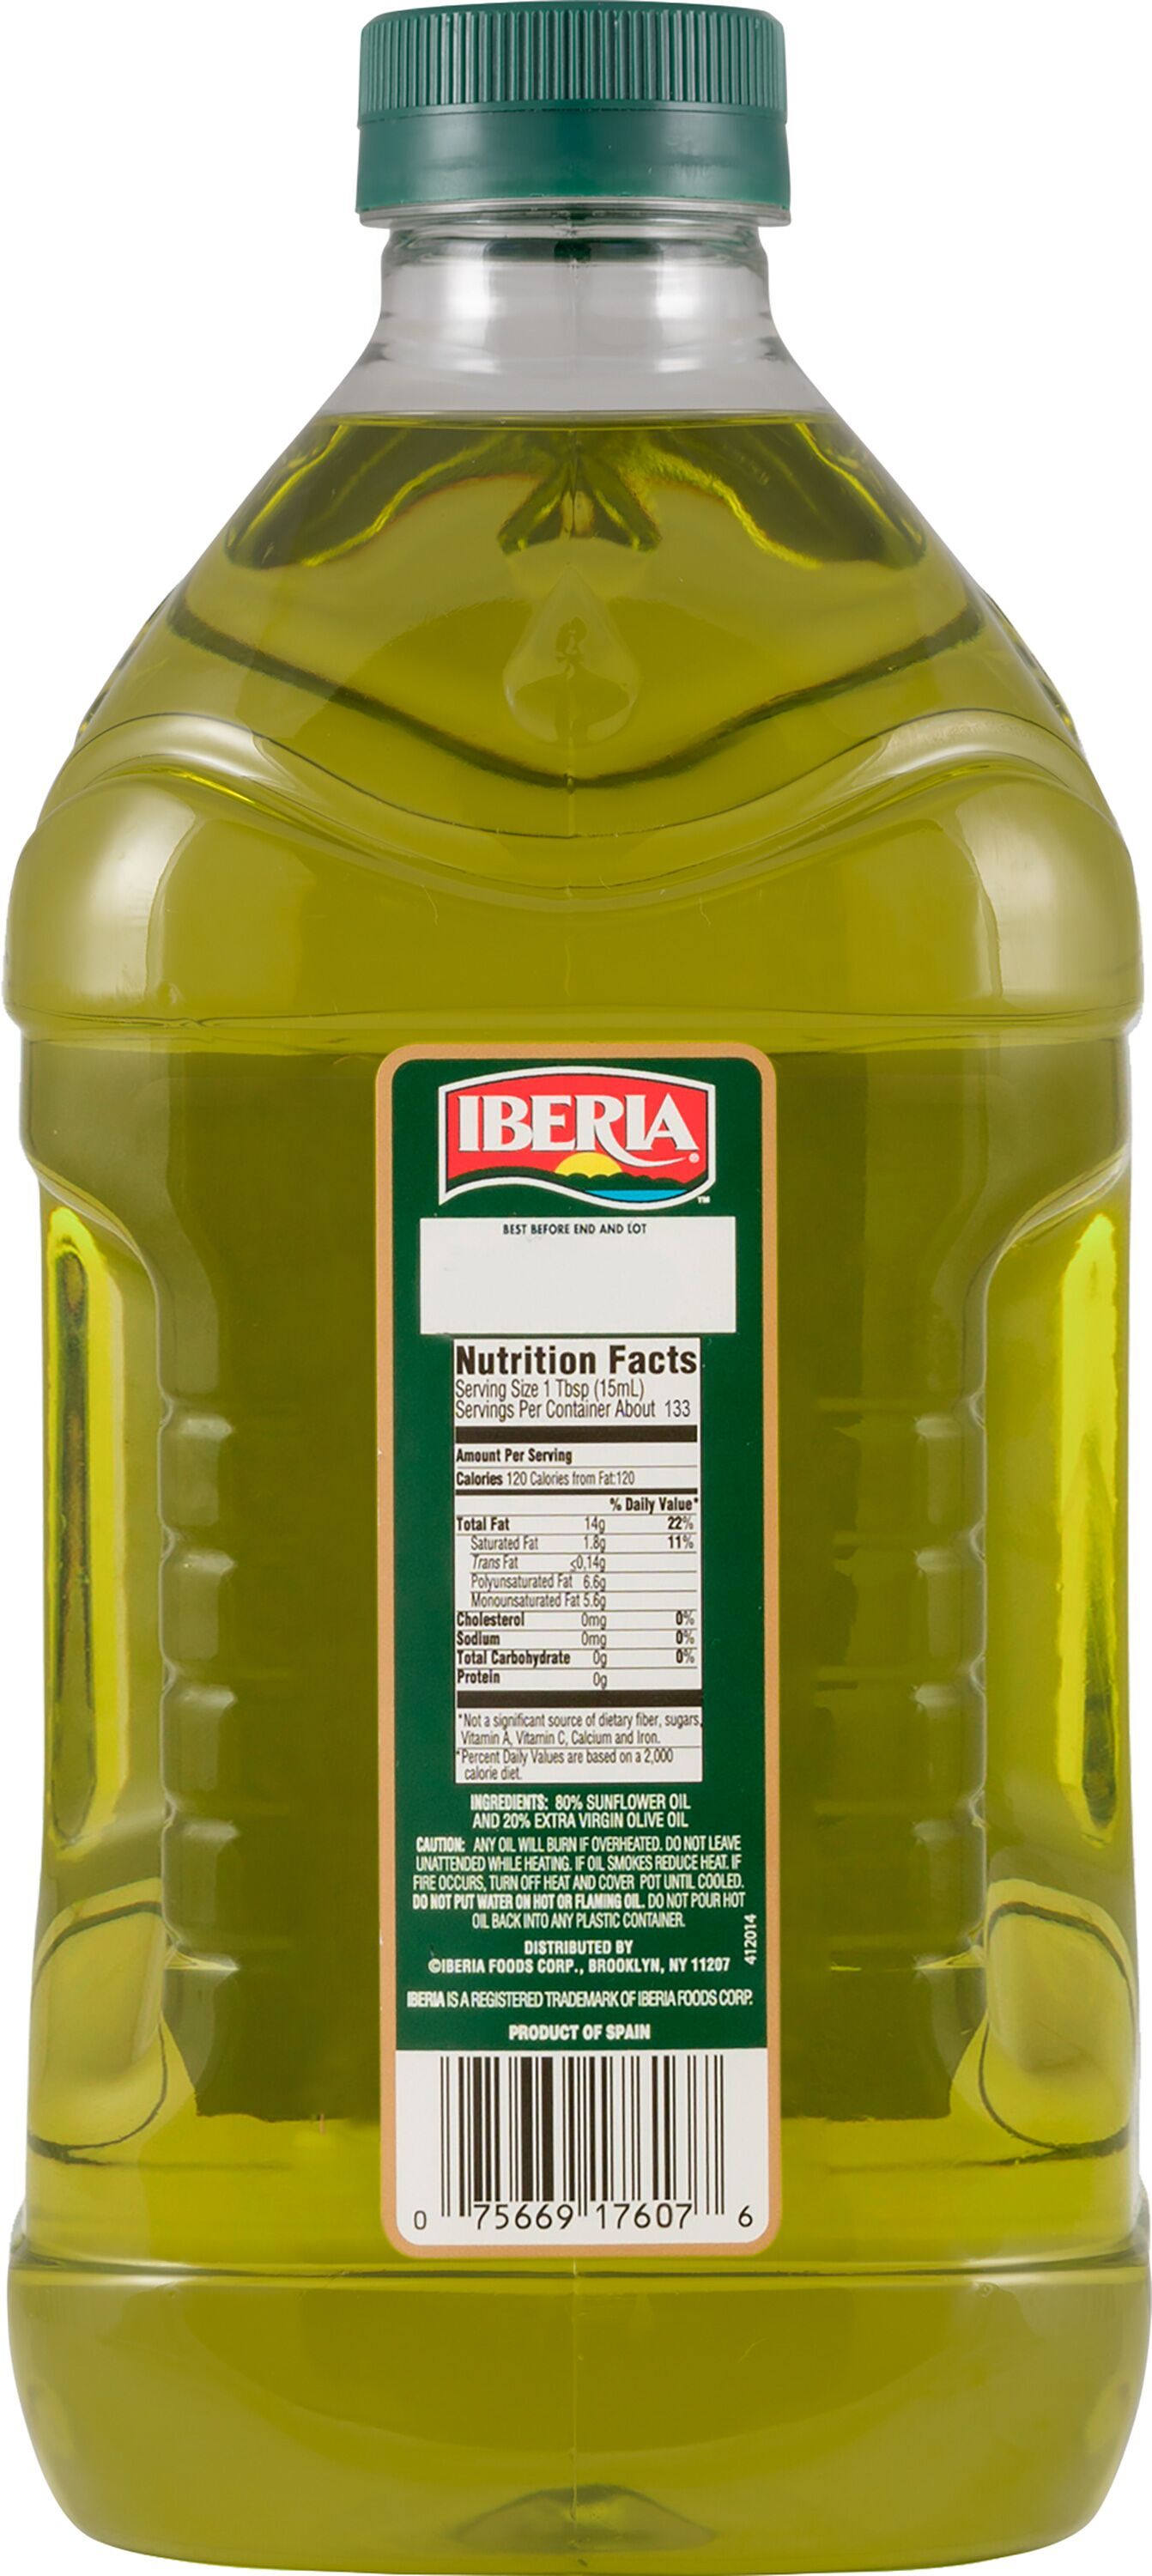 Iberia Extra Virgin Olive Oil & Sunflower Oil, 68 oz - image 2 of 2